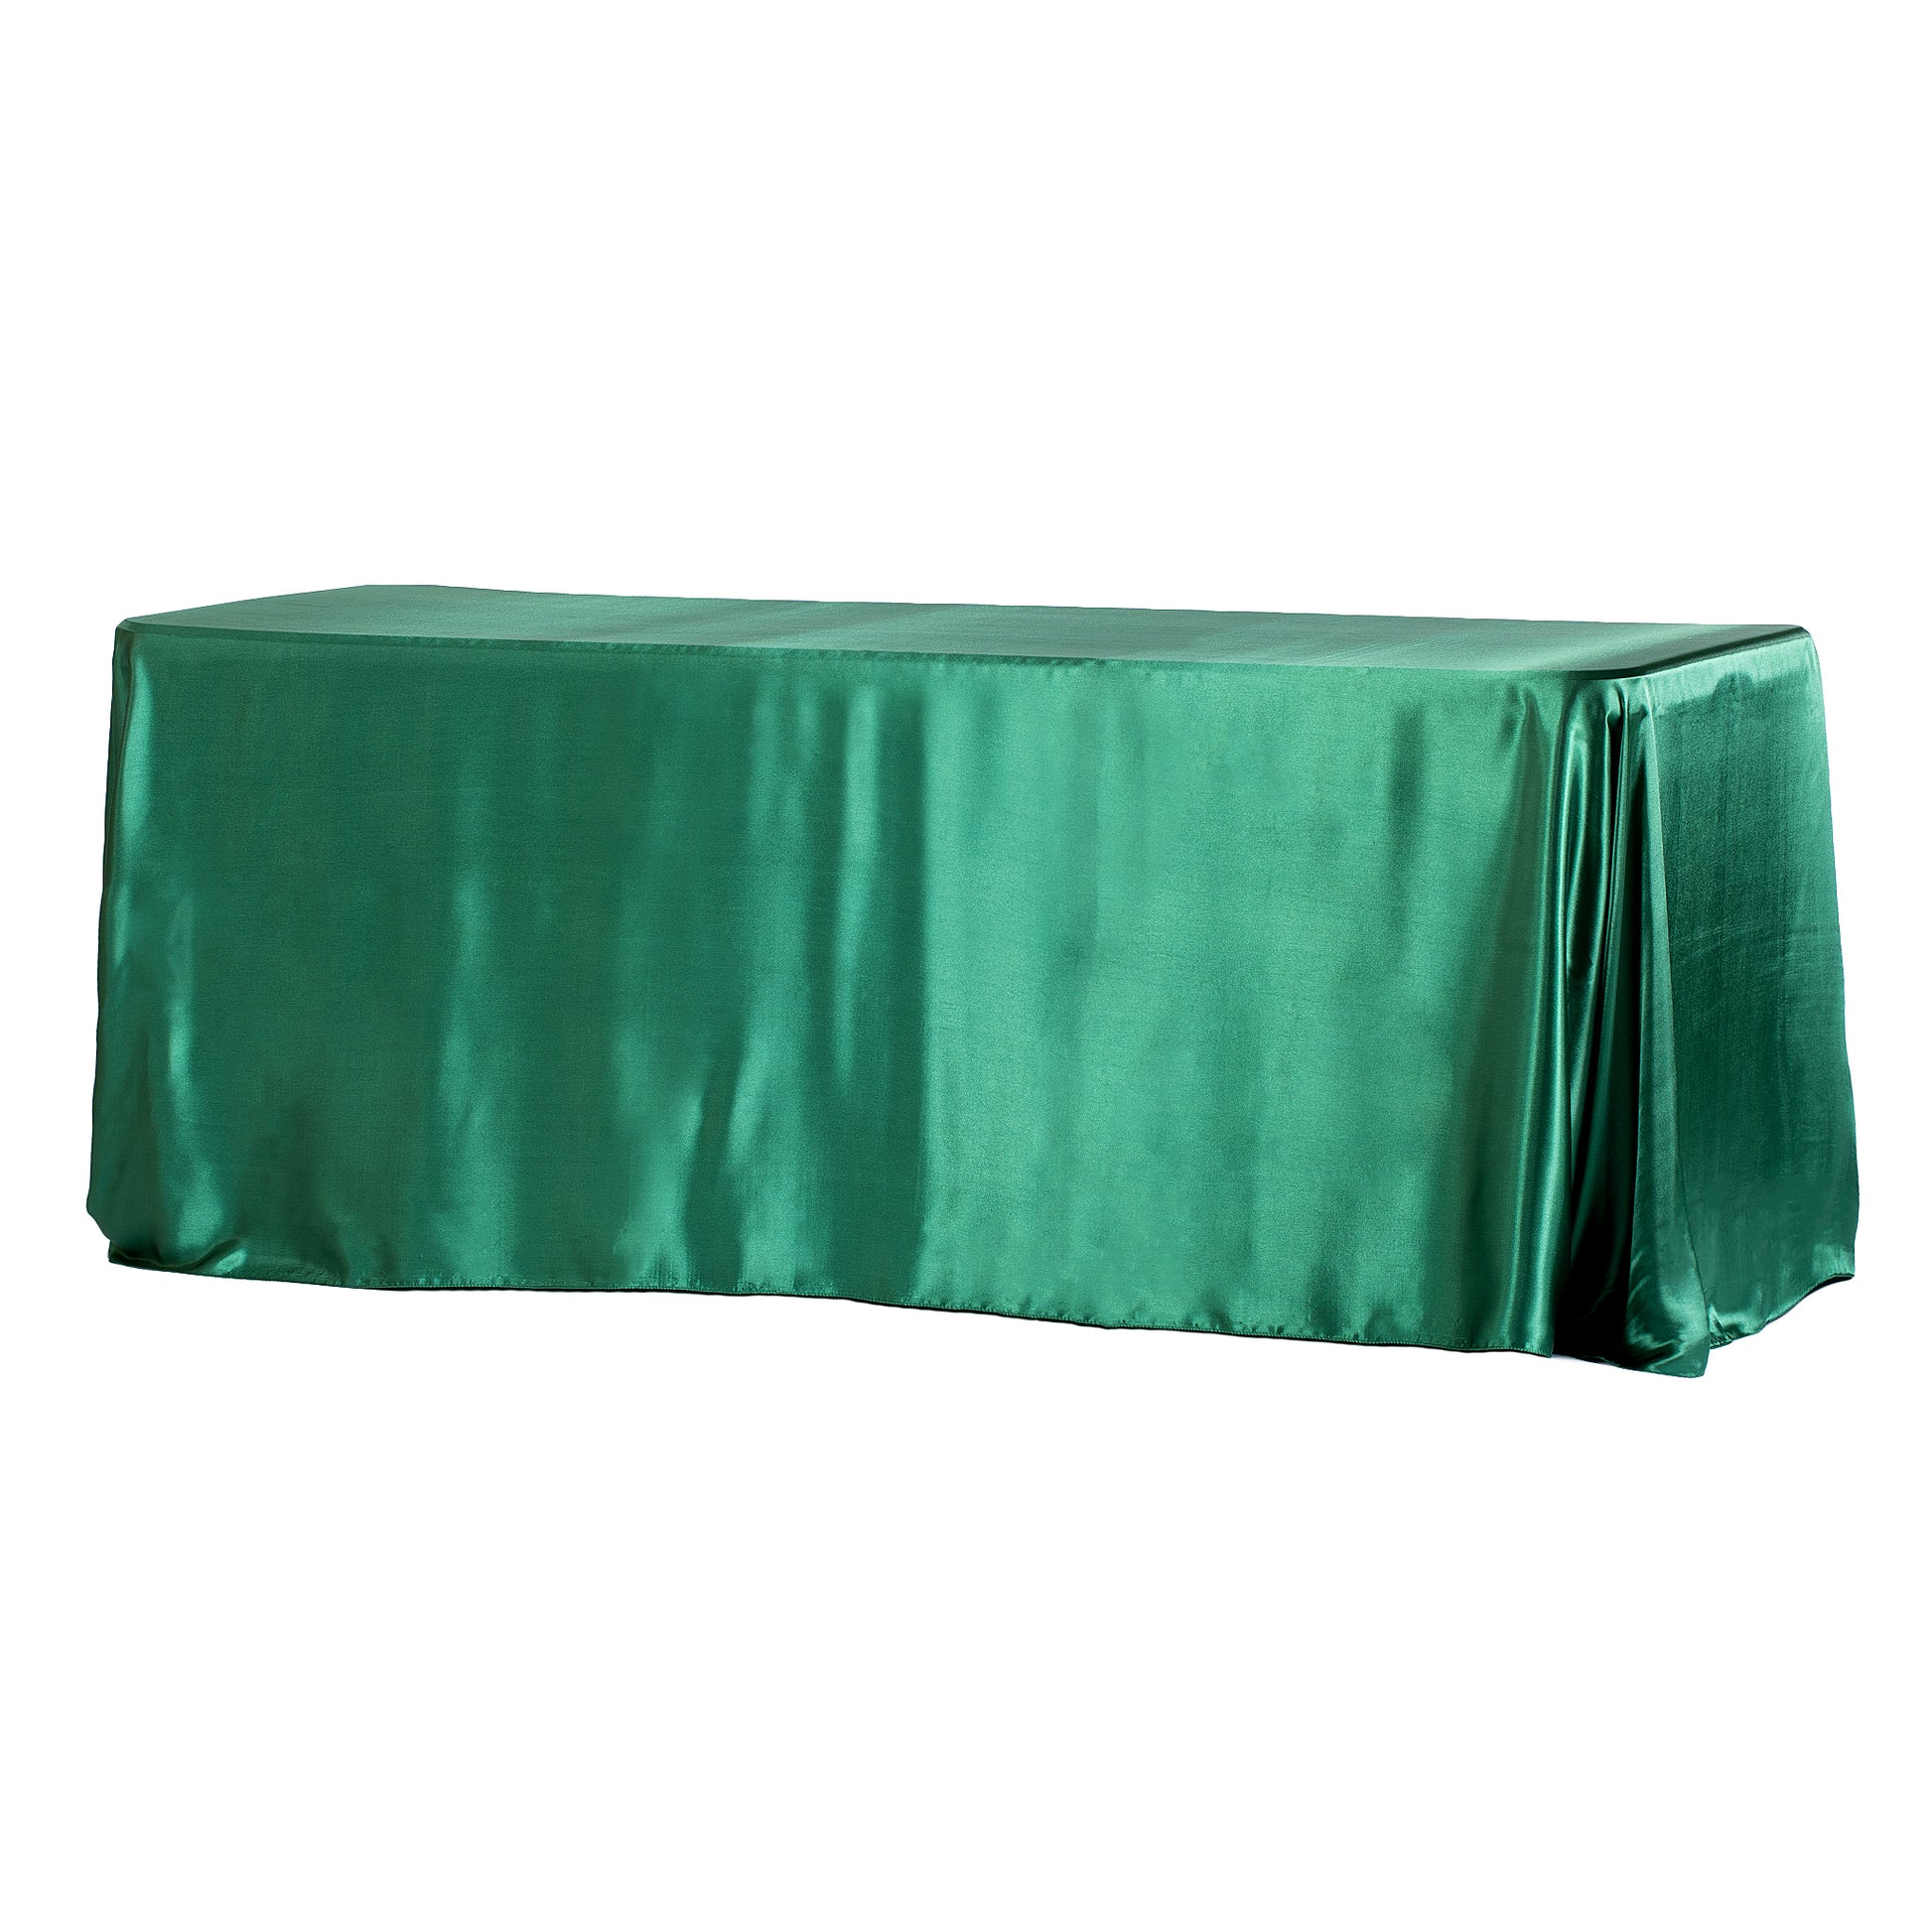 90"x156" Rectangular Satin Tablecloth - Emerald Green